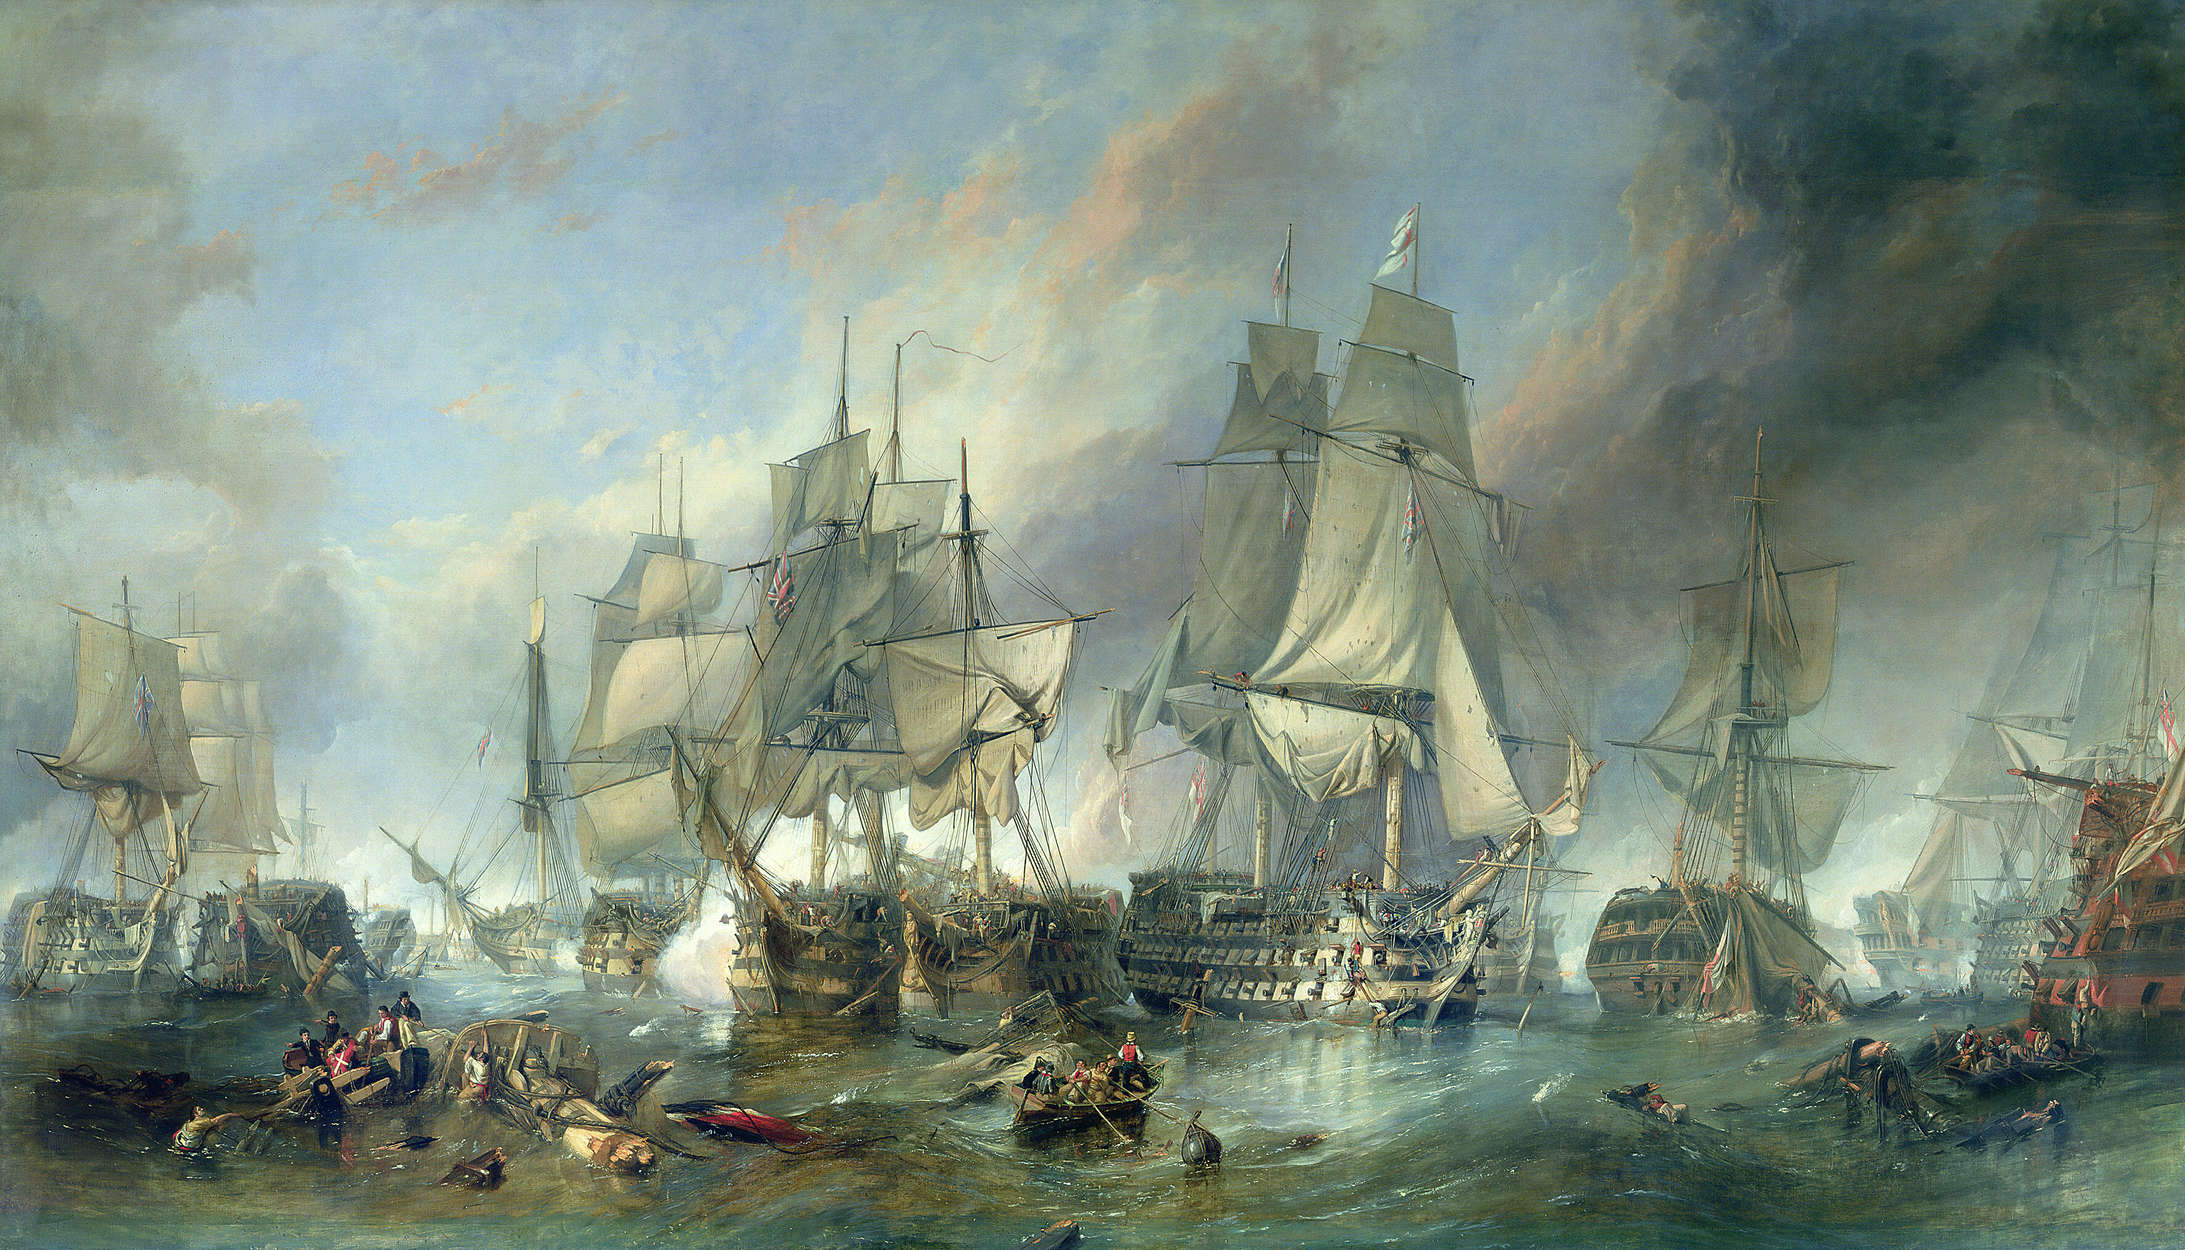             Fotomurali "La battaglia di Trafalgar" di Clarkson Stanfield
        